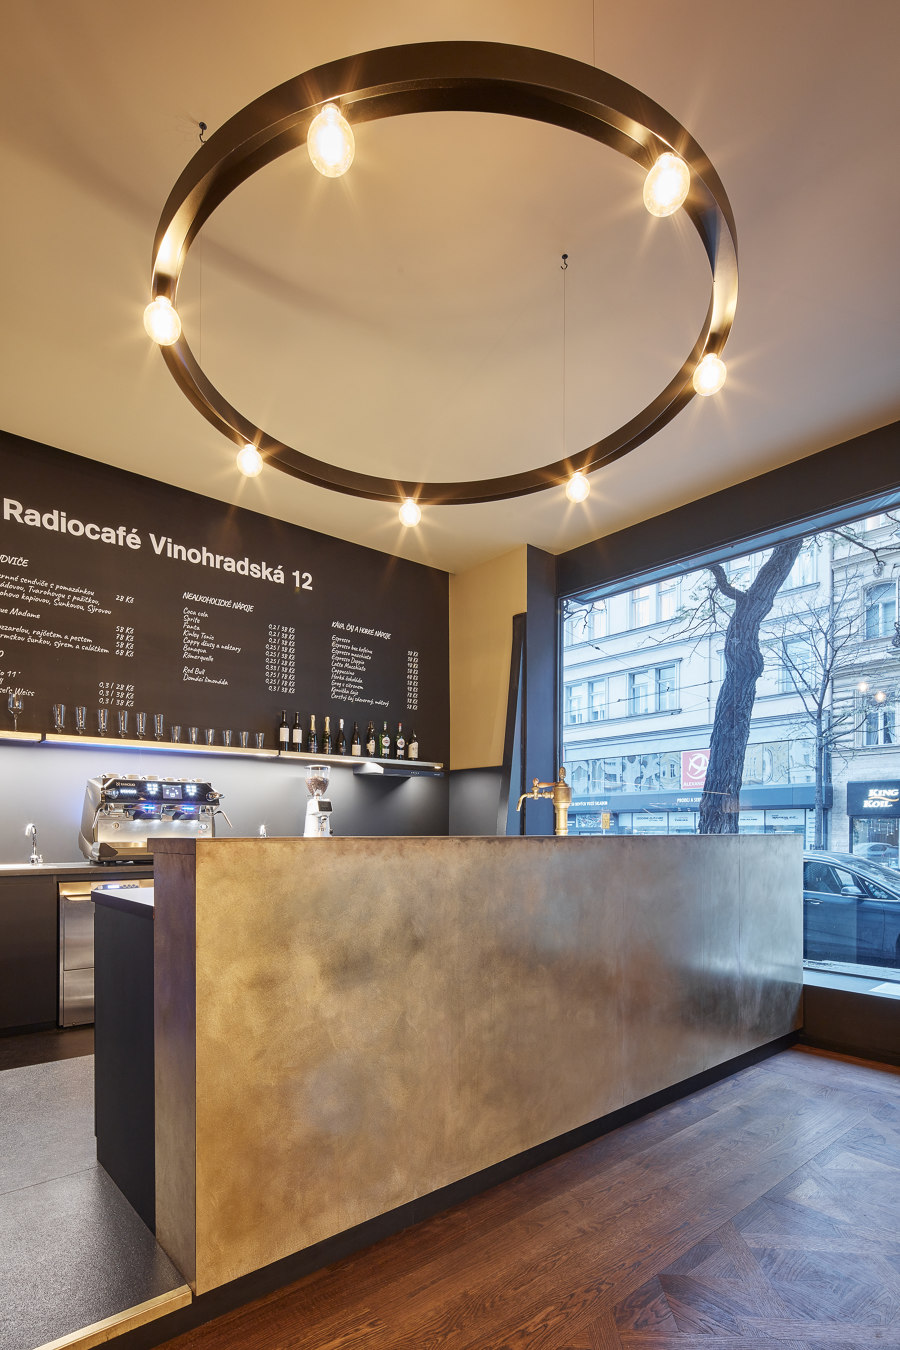 Radiocafé Vinohradská 12 von CMC Architects | Café-Interieurs